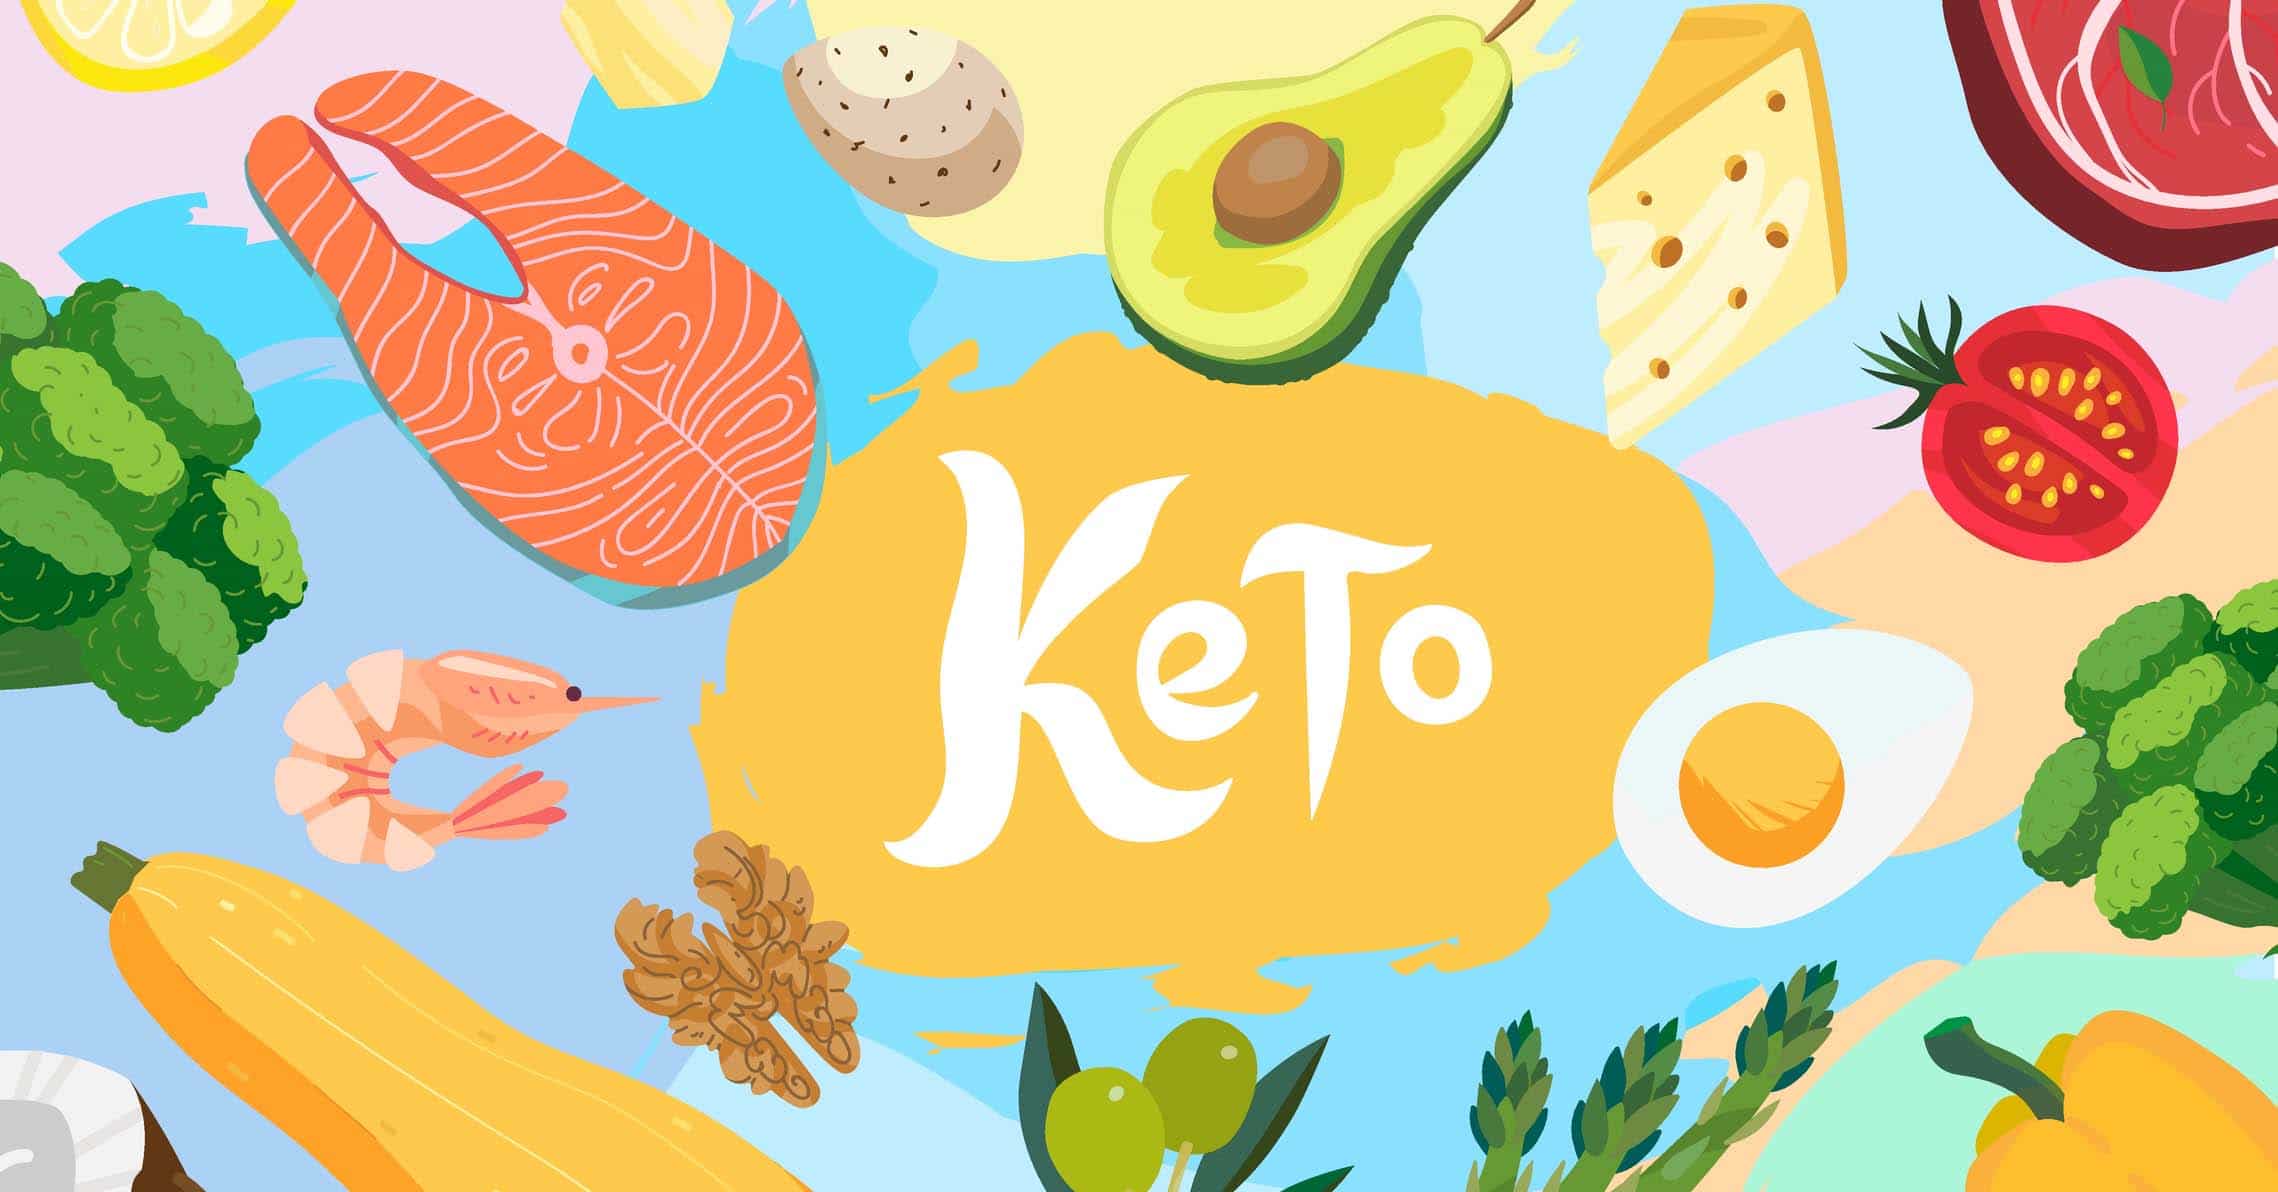 keto-diett stor guide